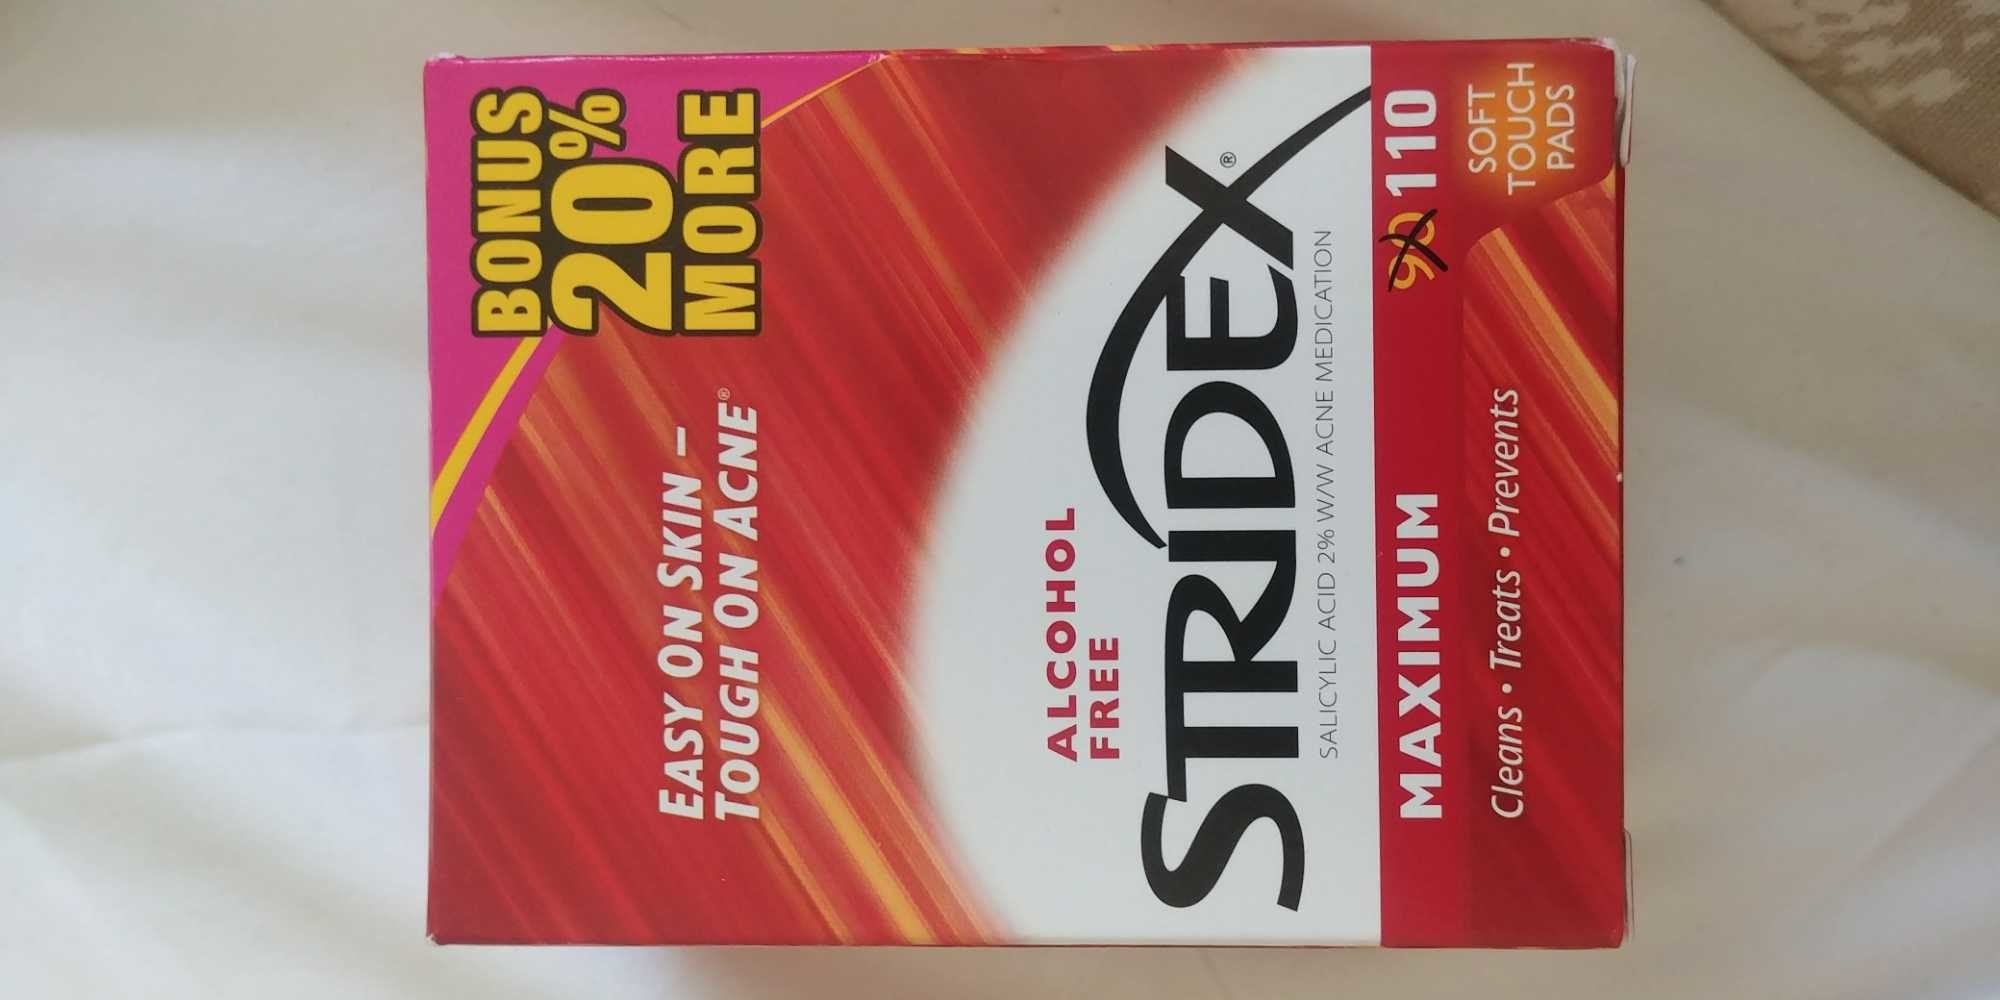 stridex maximum - Product - en